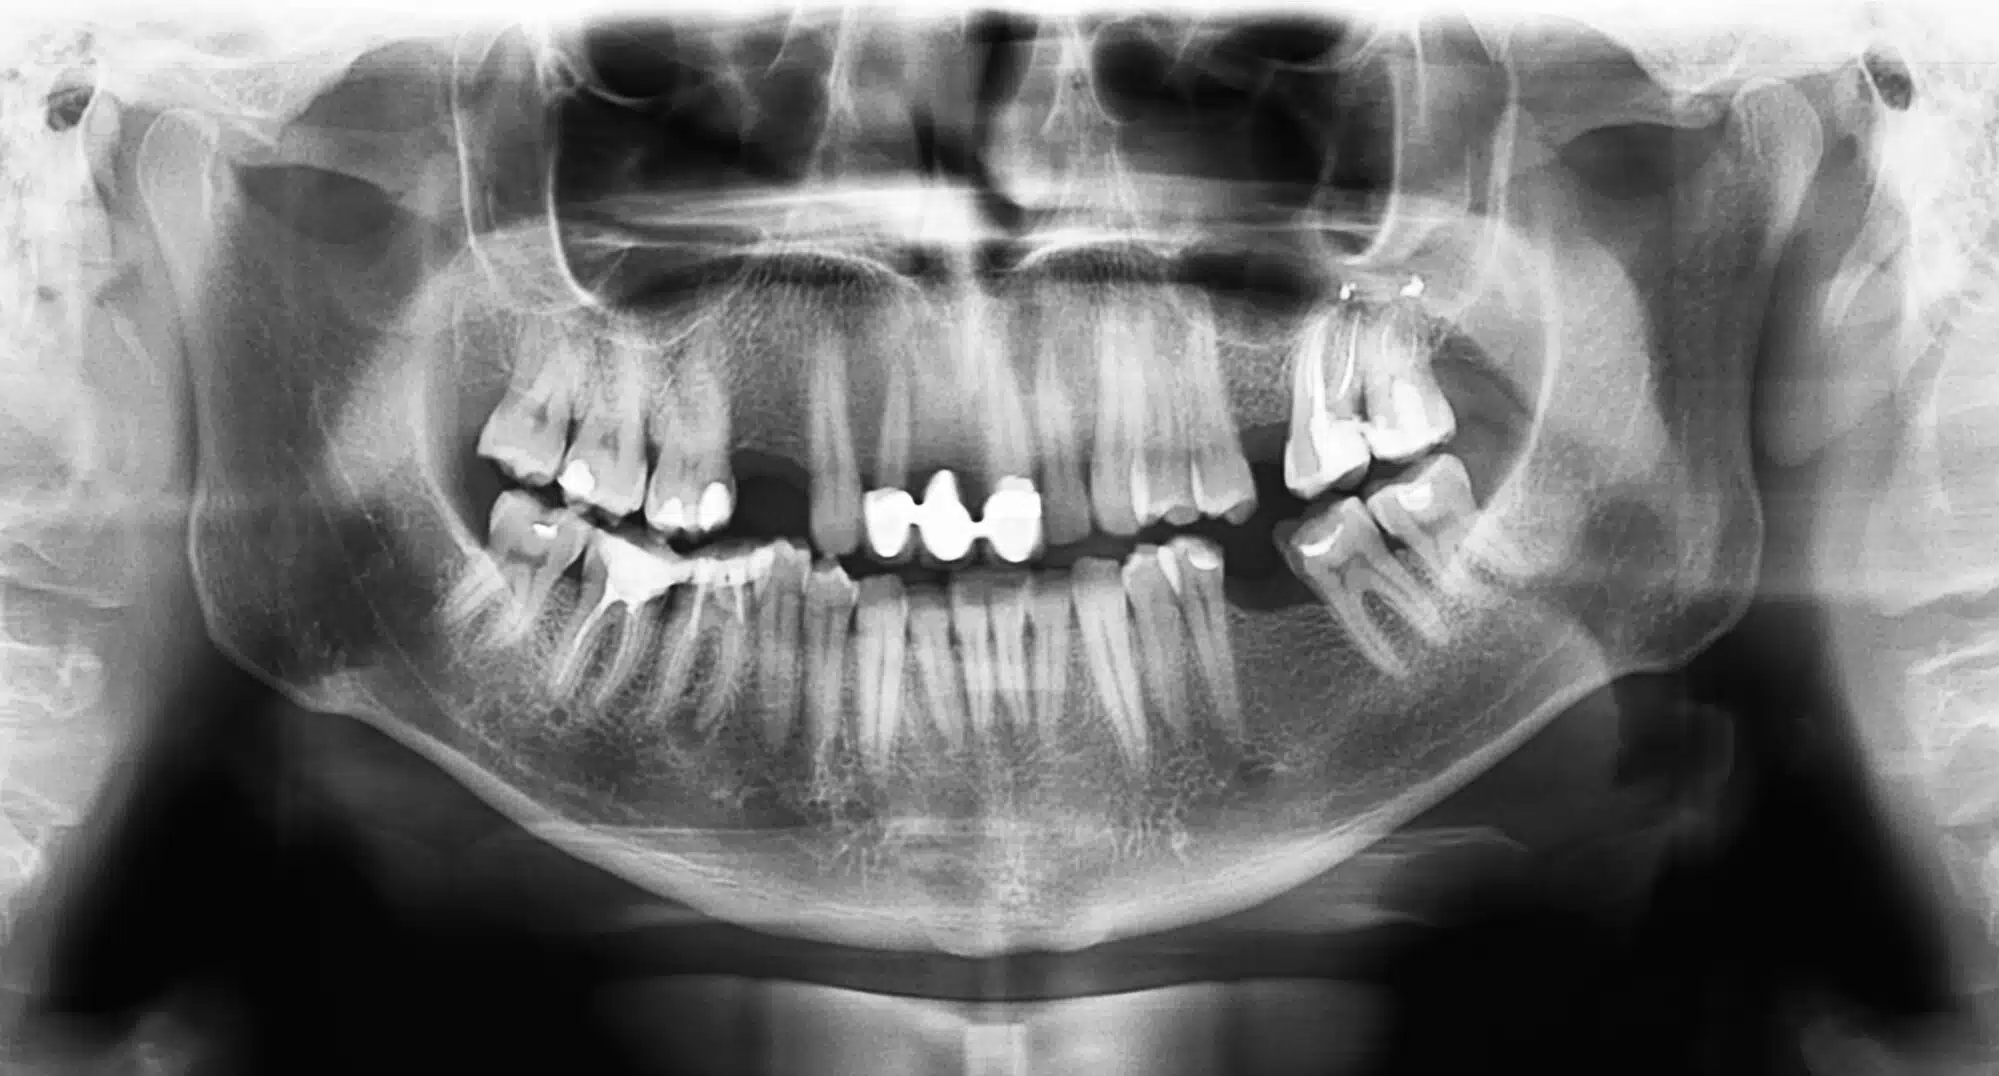 צילום רטנגן של שיניים ולסת. <a href="https://depositphotos.com. ">איור: depositphotos.com</a>